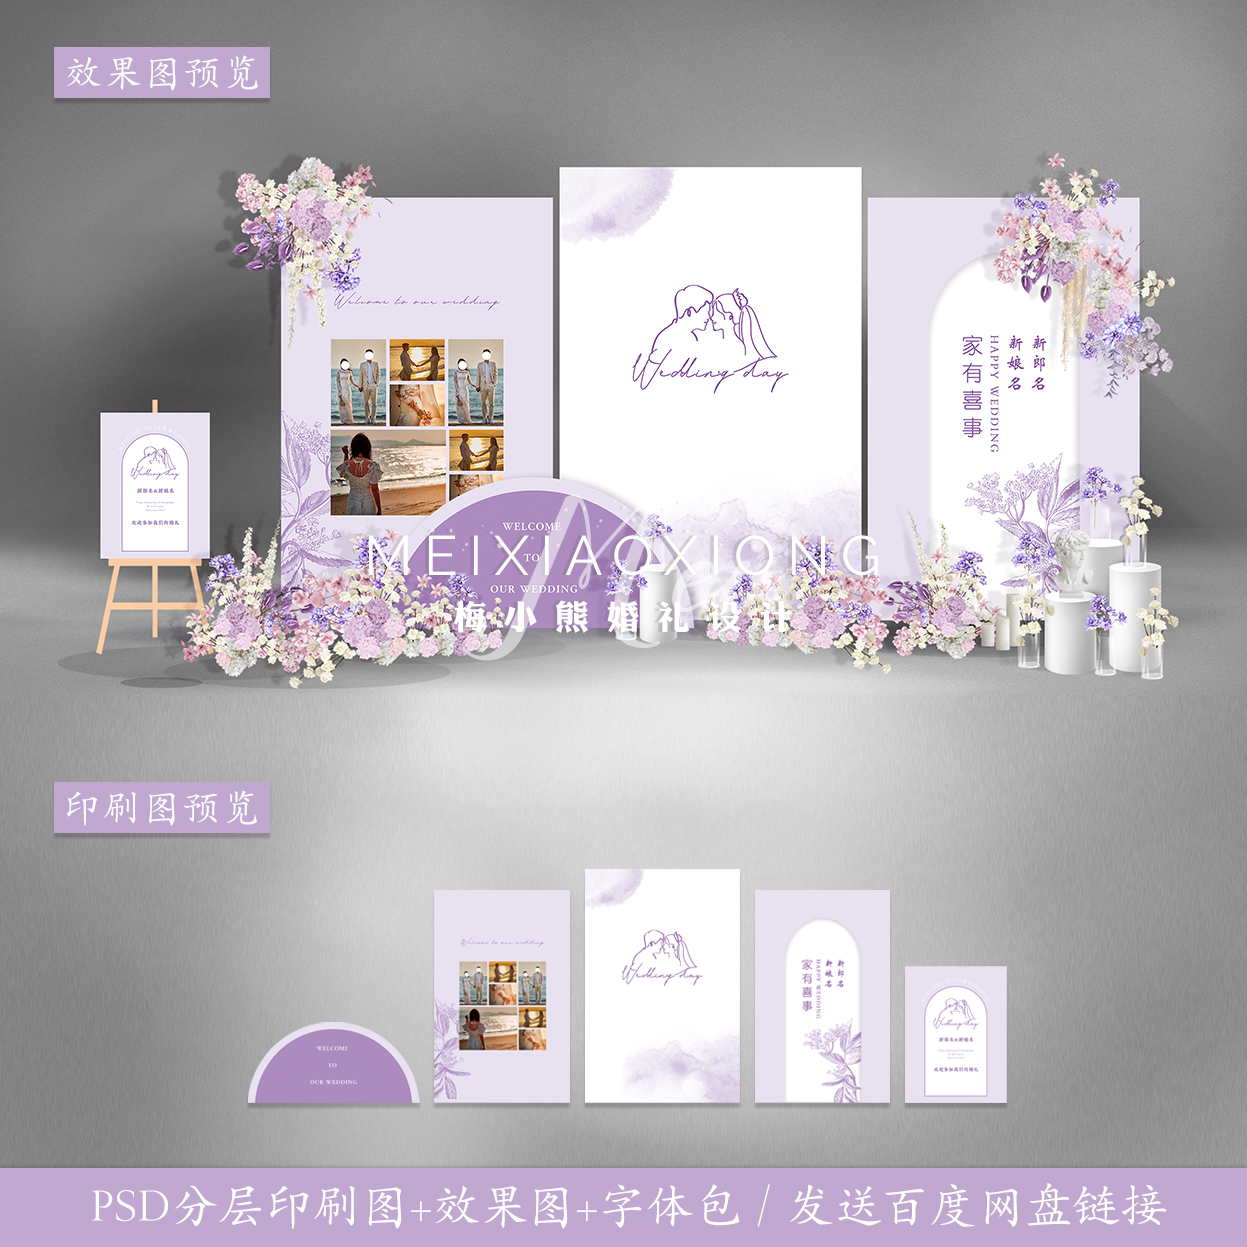 白紫色婚礼背景墙设计效果图 结婚迎宾照片墙KT板布置PSD素材模板